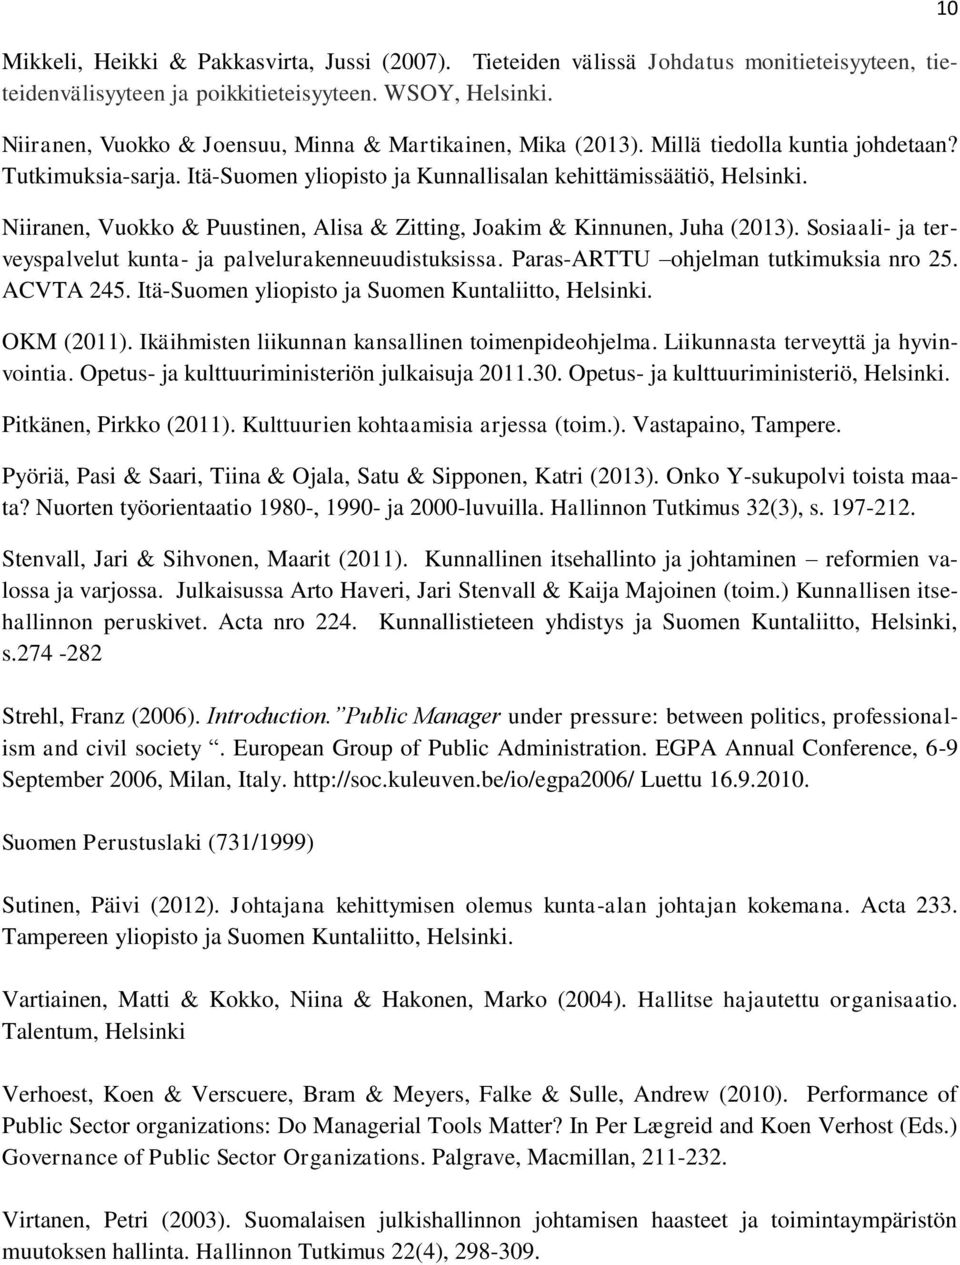 Niiranen, Vuokko & Puustinen, Alisa & Zitting, Joakim & Kinnunen, Juha (2013). Sosiaali- ja terveyspalvelut kunta- ja palvelurakenneuudistuksissa. Paras-ARTTU ohjelman tutkimuksia nro 25. ACVTA 245.